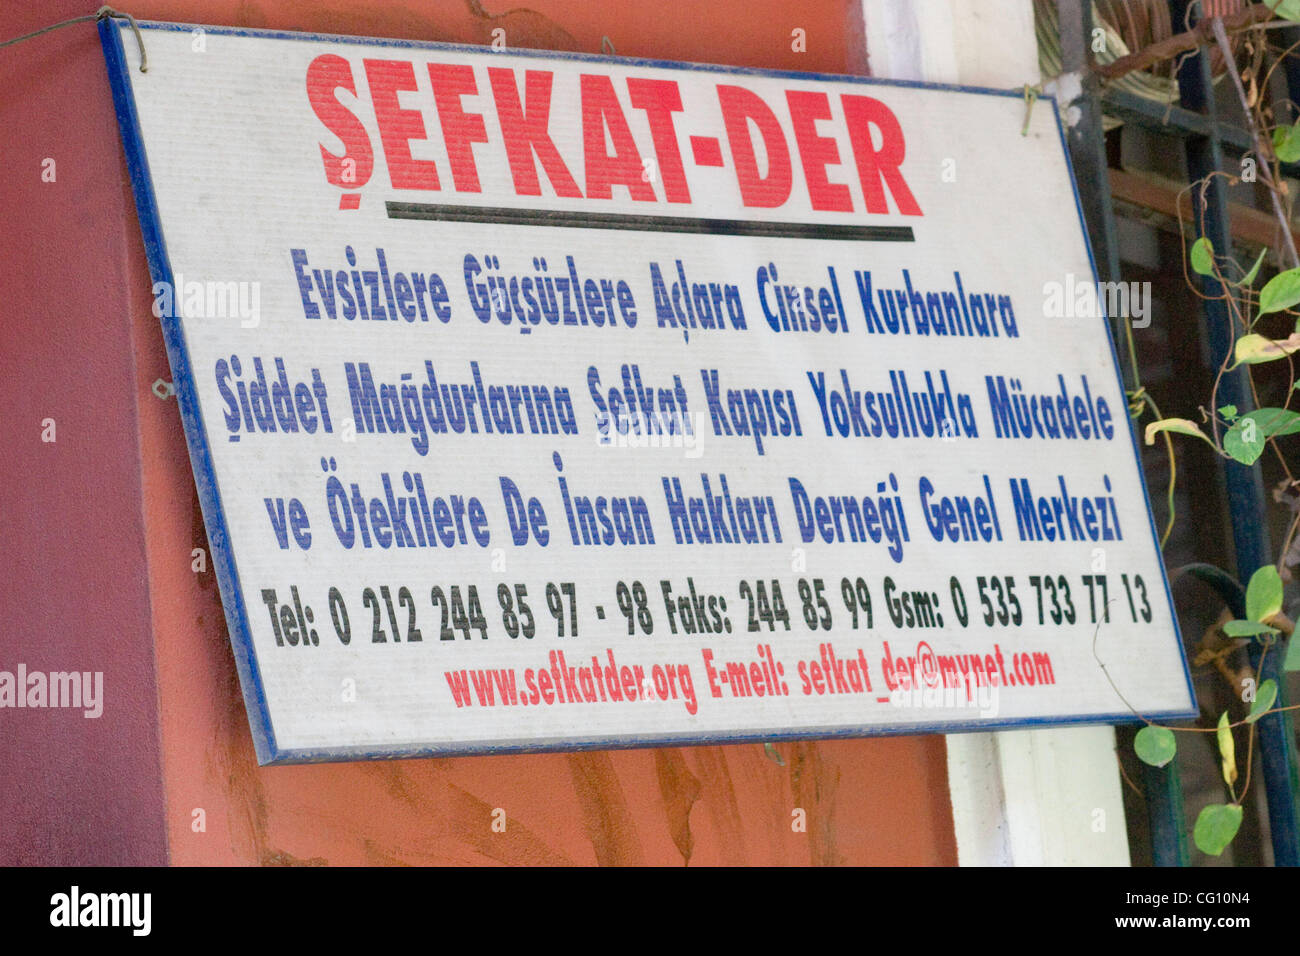 Sefkat-Der è una organizzazione di Hayrettin Bulan, una ONG che fornisce riparo e di cura per le persone in difficoltà (persone senzatetto, donne maltrattate, rifugiati e altri). Foto Stock